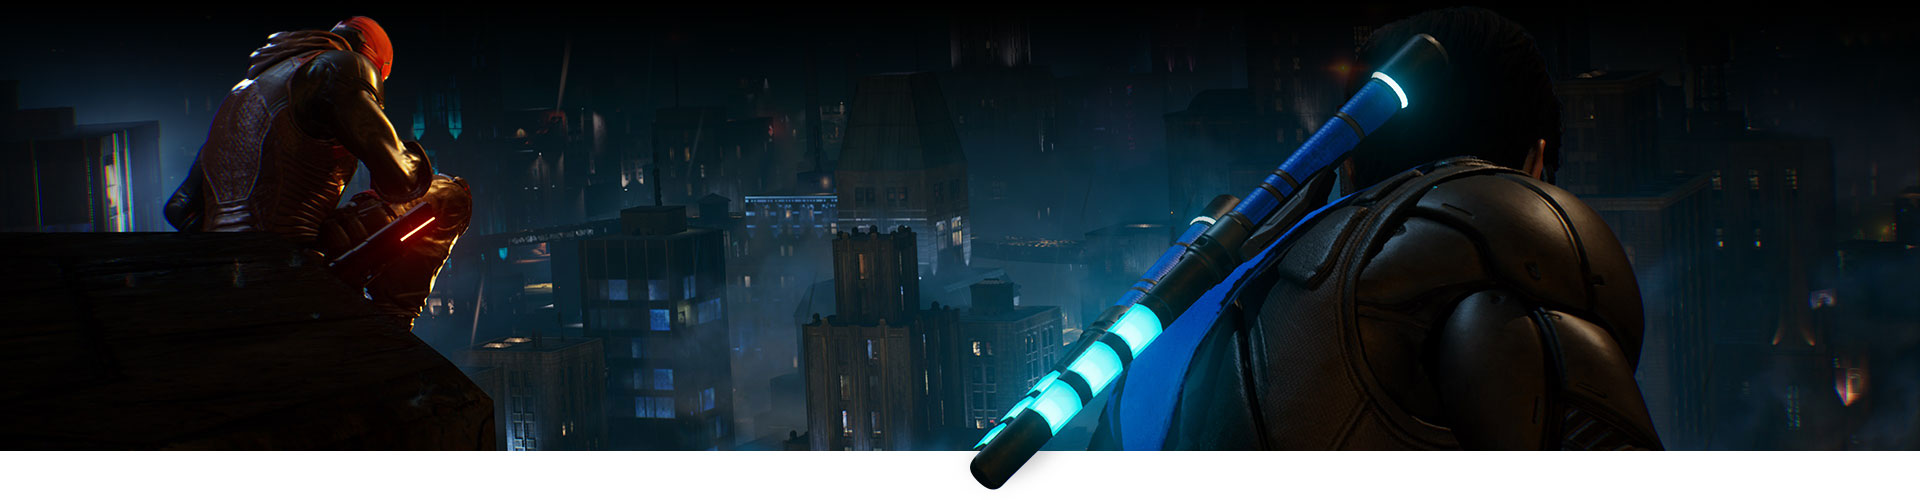 Red Hood en Nightwing zitten op een dak en kijken uit over de stad.